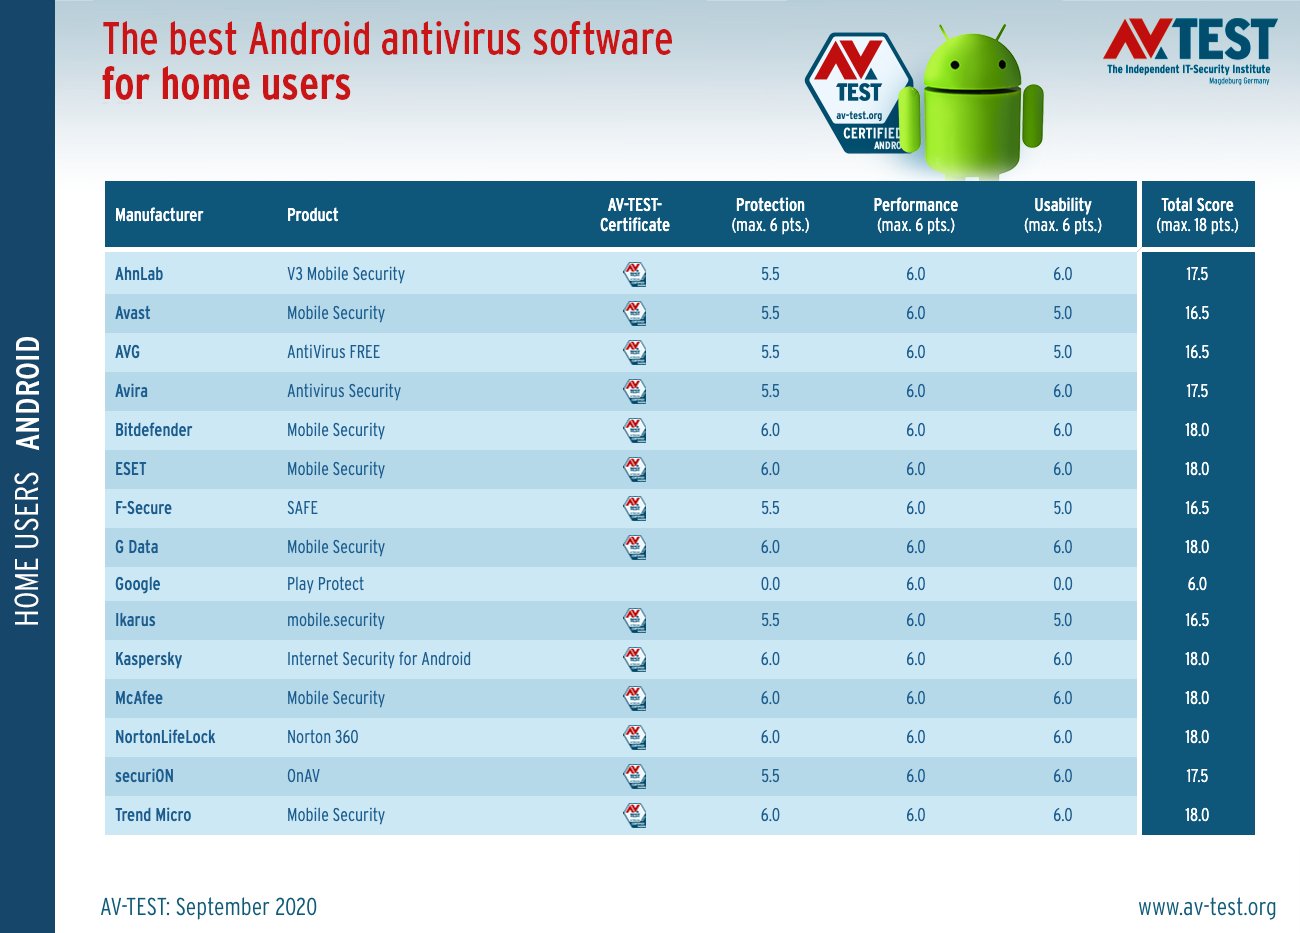 ¿Qué antivirus es el mejor para Android?